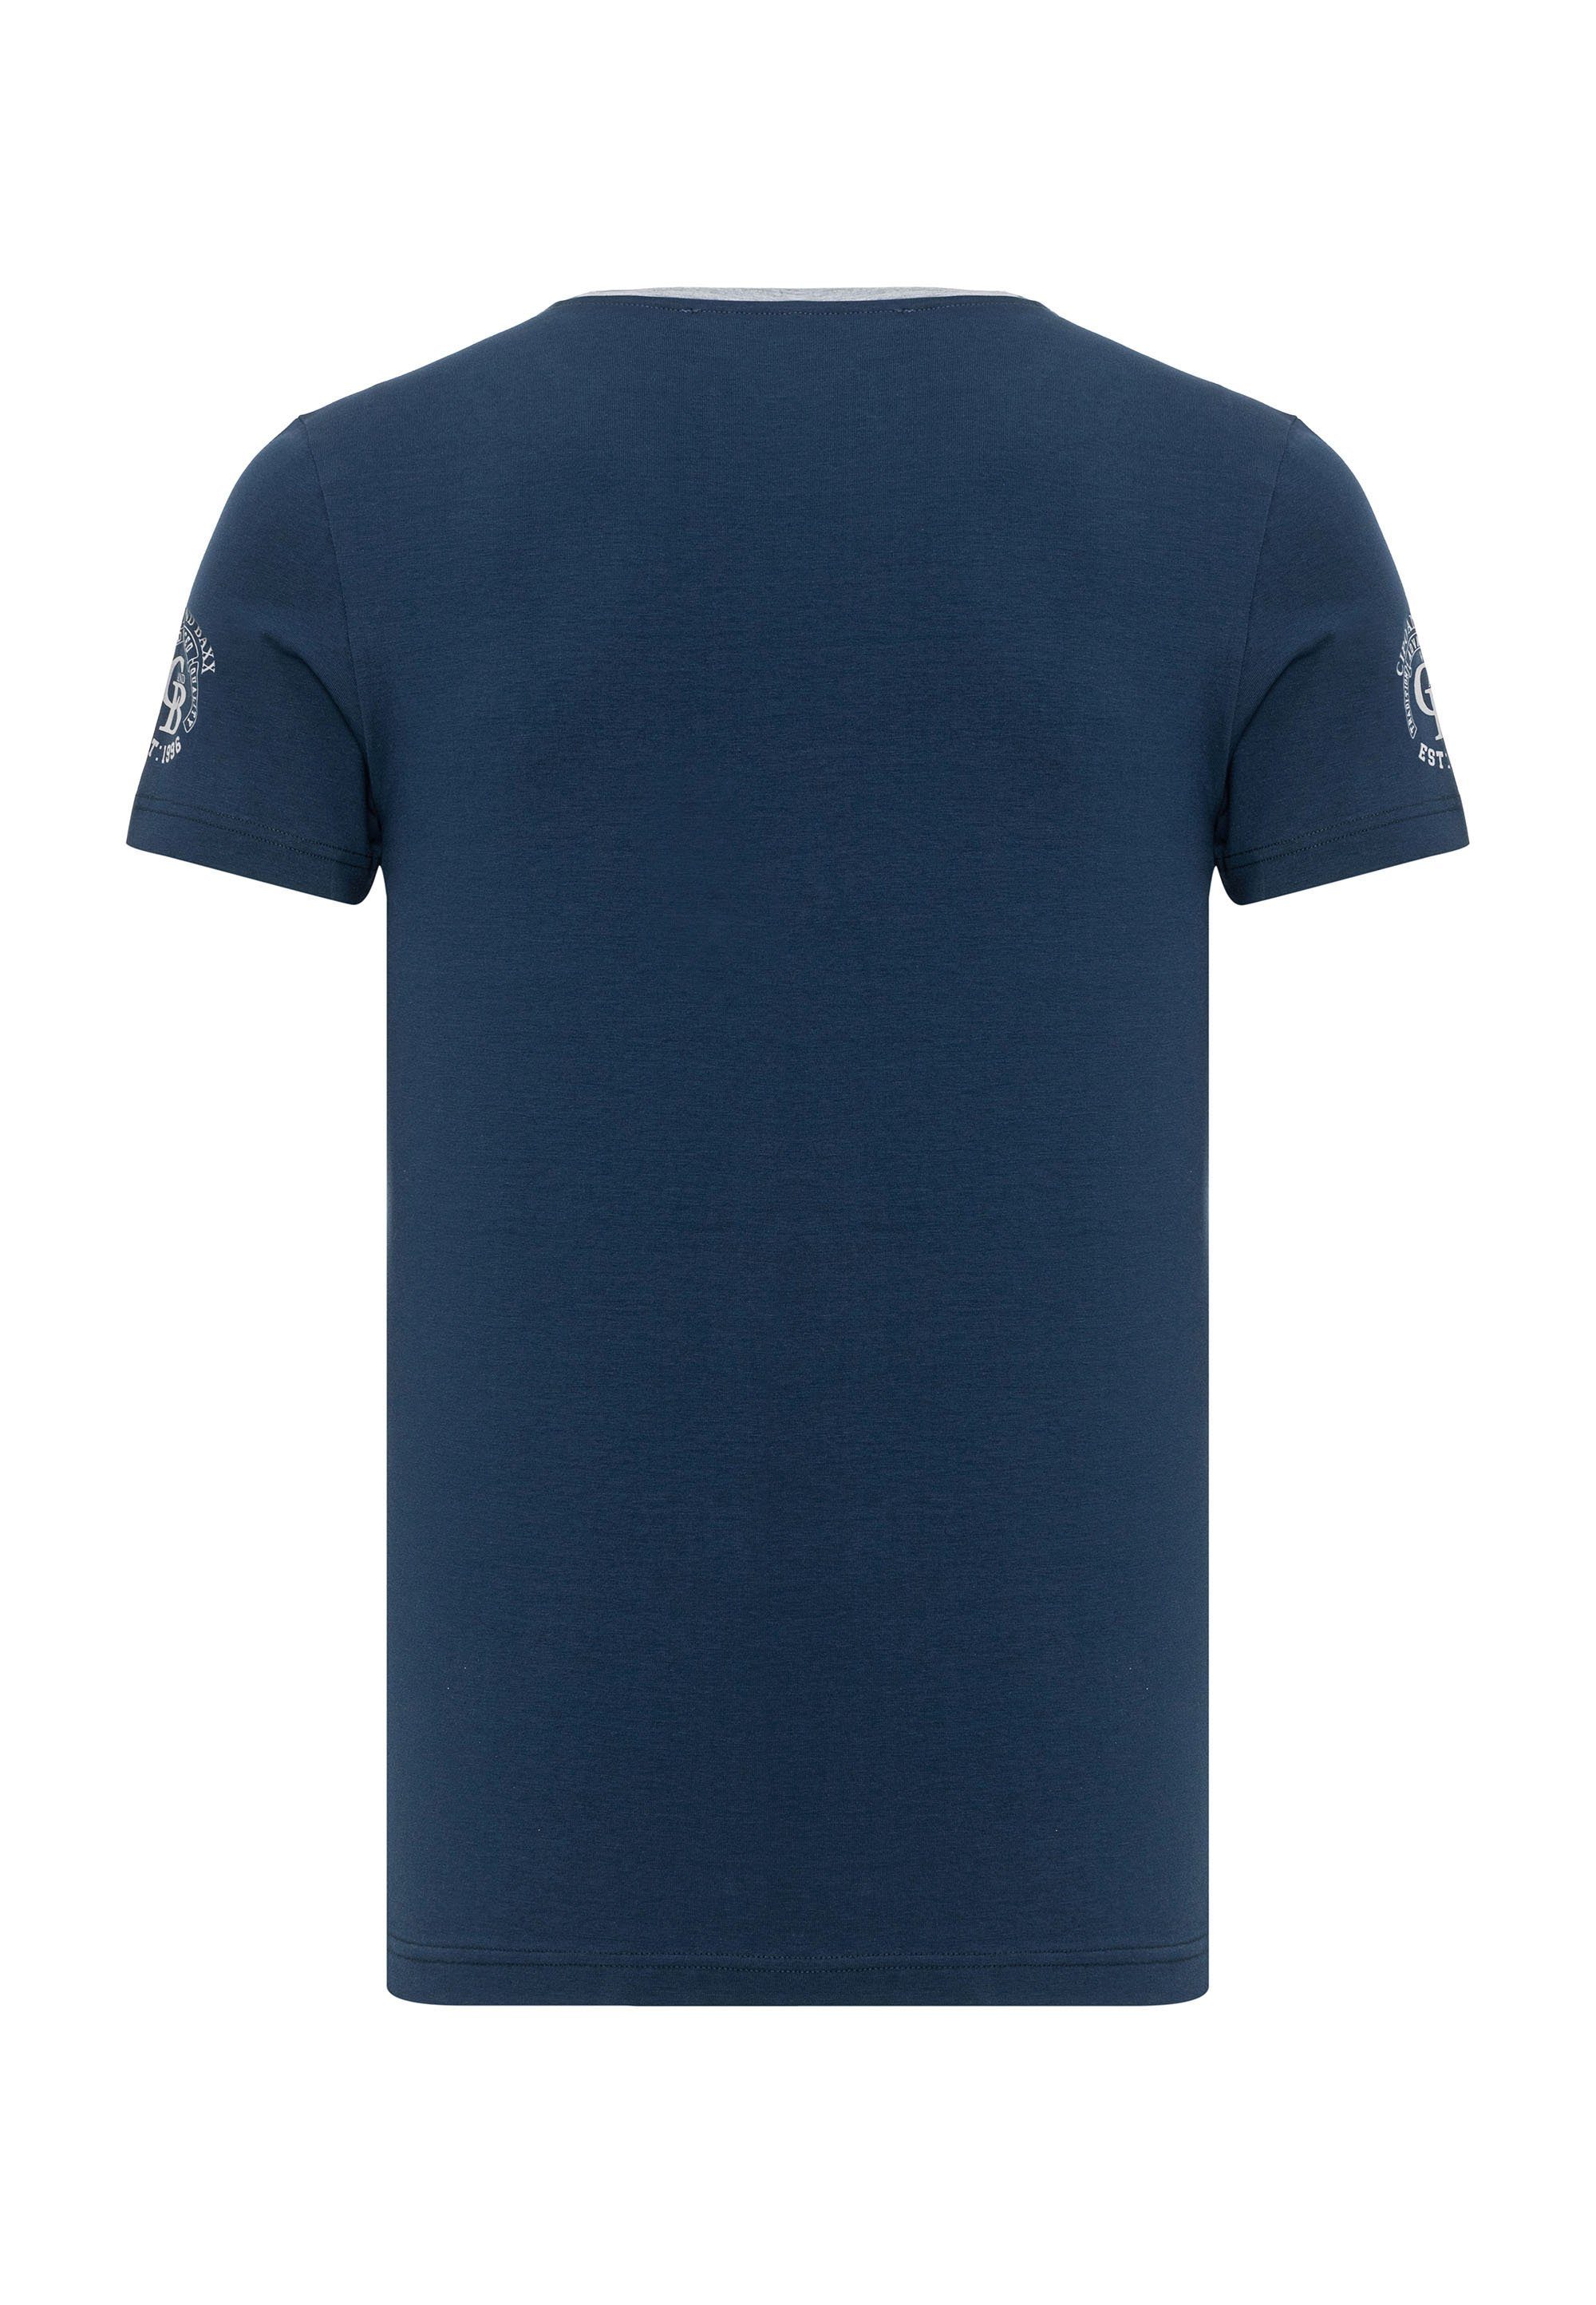 T-Shirt & Baxx dezenten Markenlogos mit blau Cipo